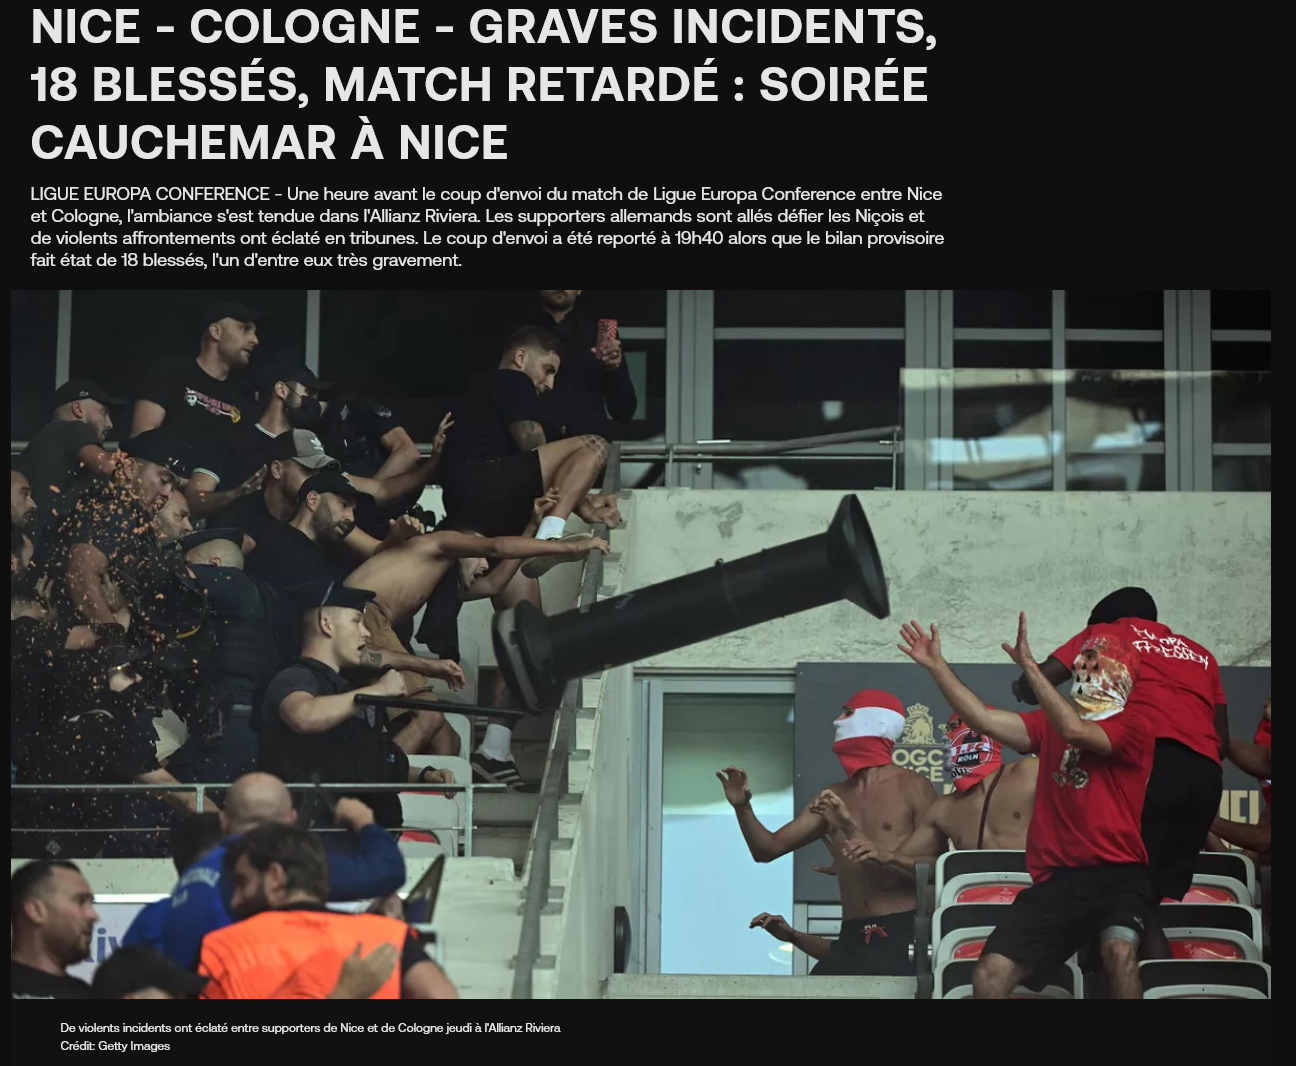 Nice - Cologne - Graves incidents 18 blessés match retardé soirée cauchemar à Nice.jpg